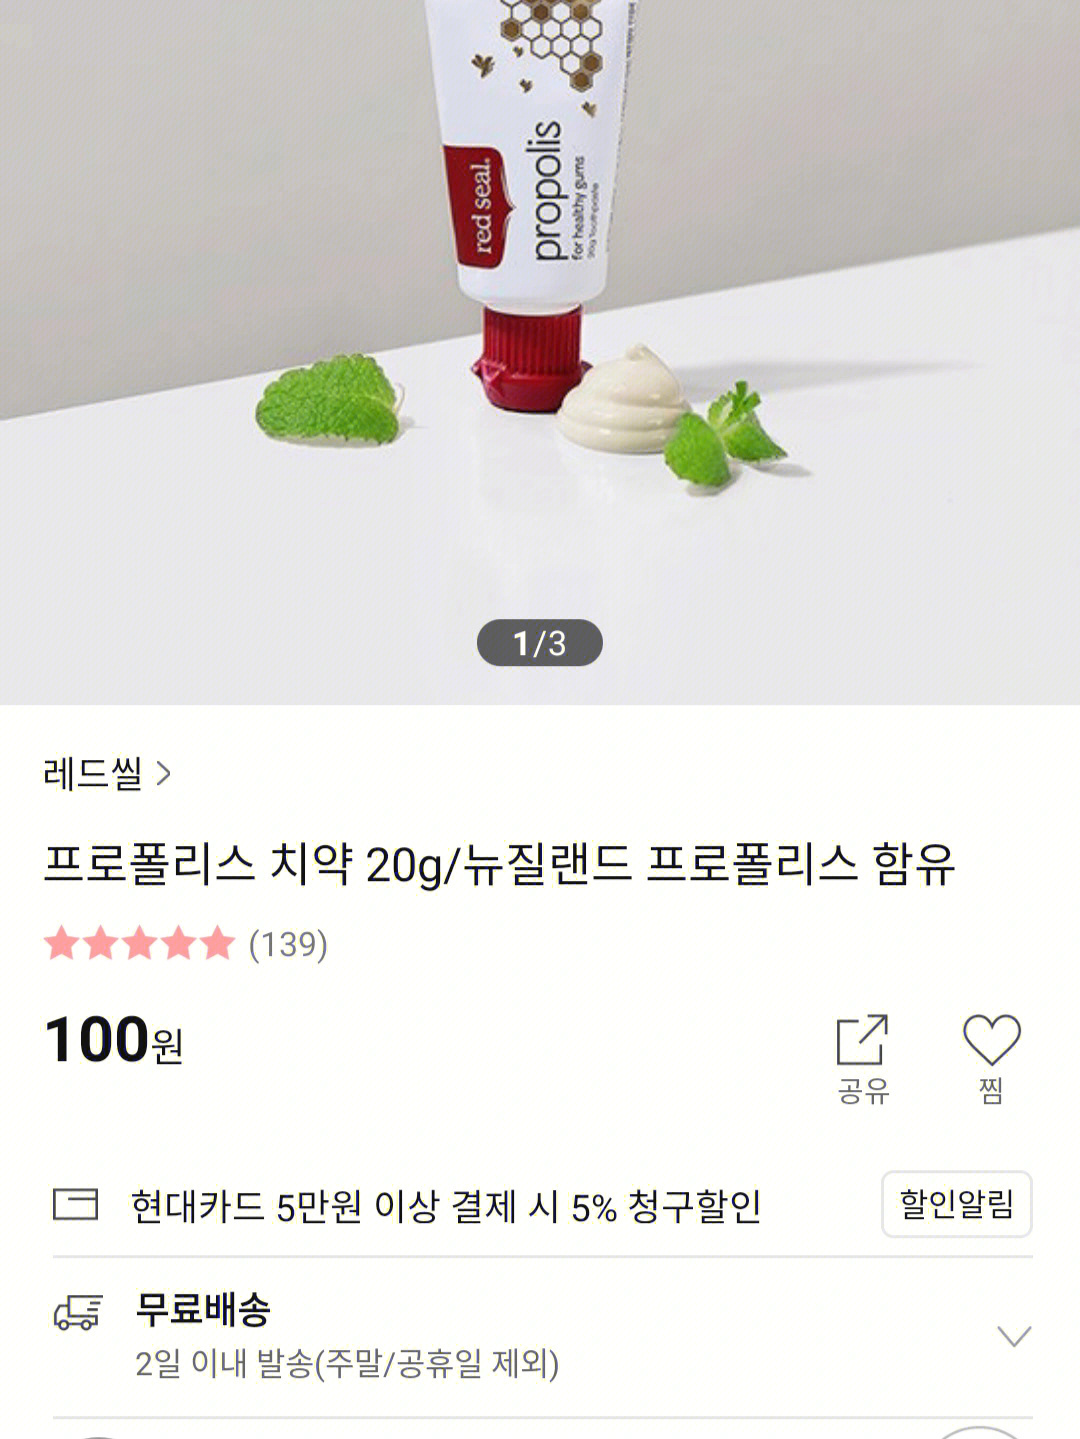 韩国牙膏广告图片